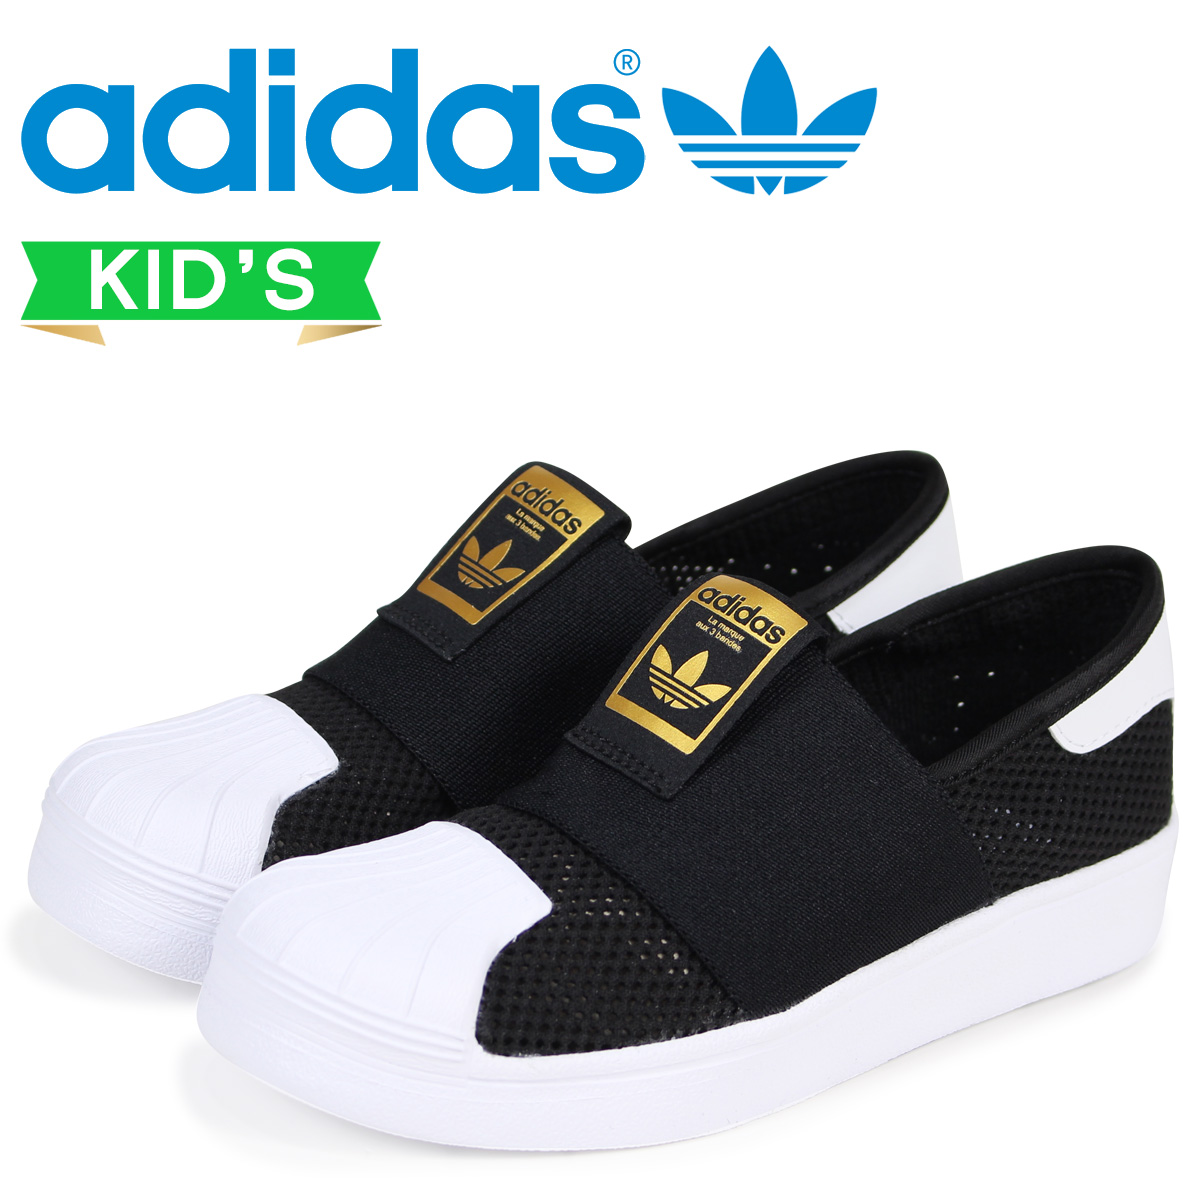 adidas kids runners